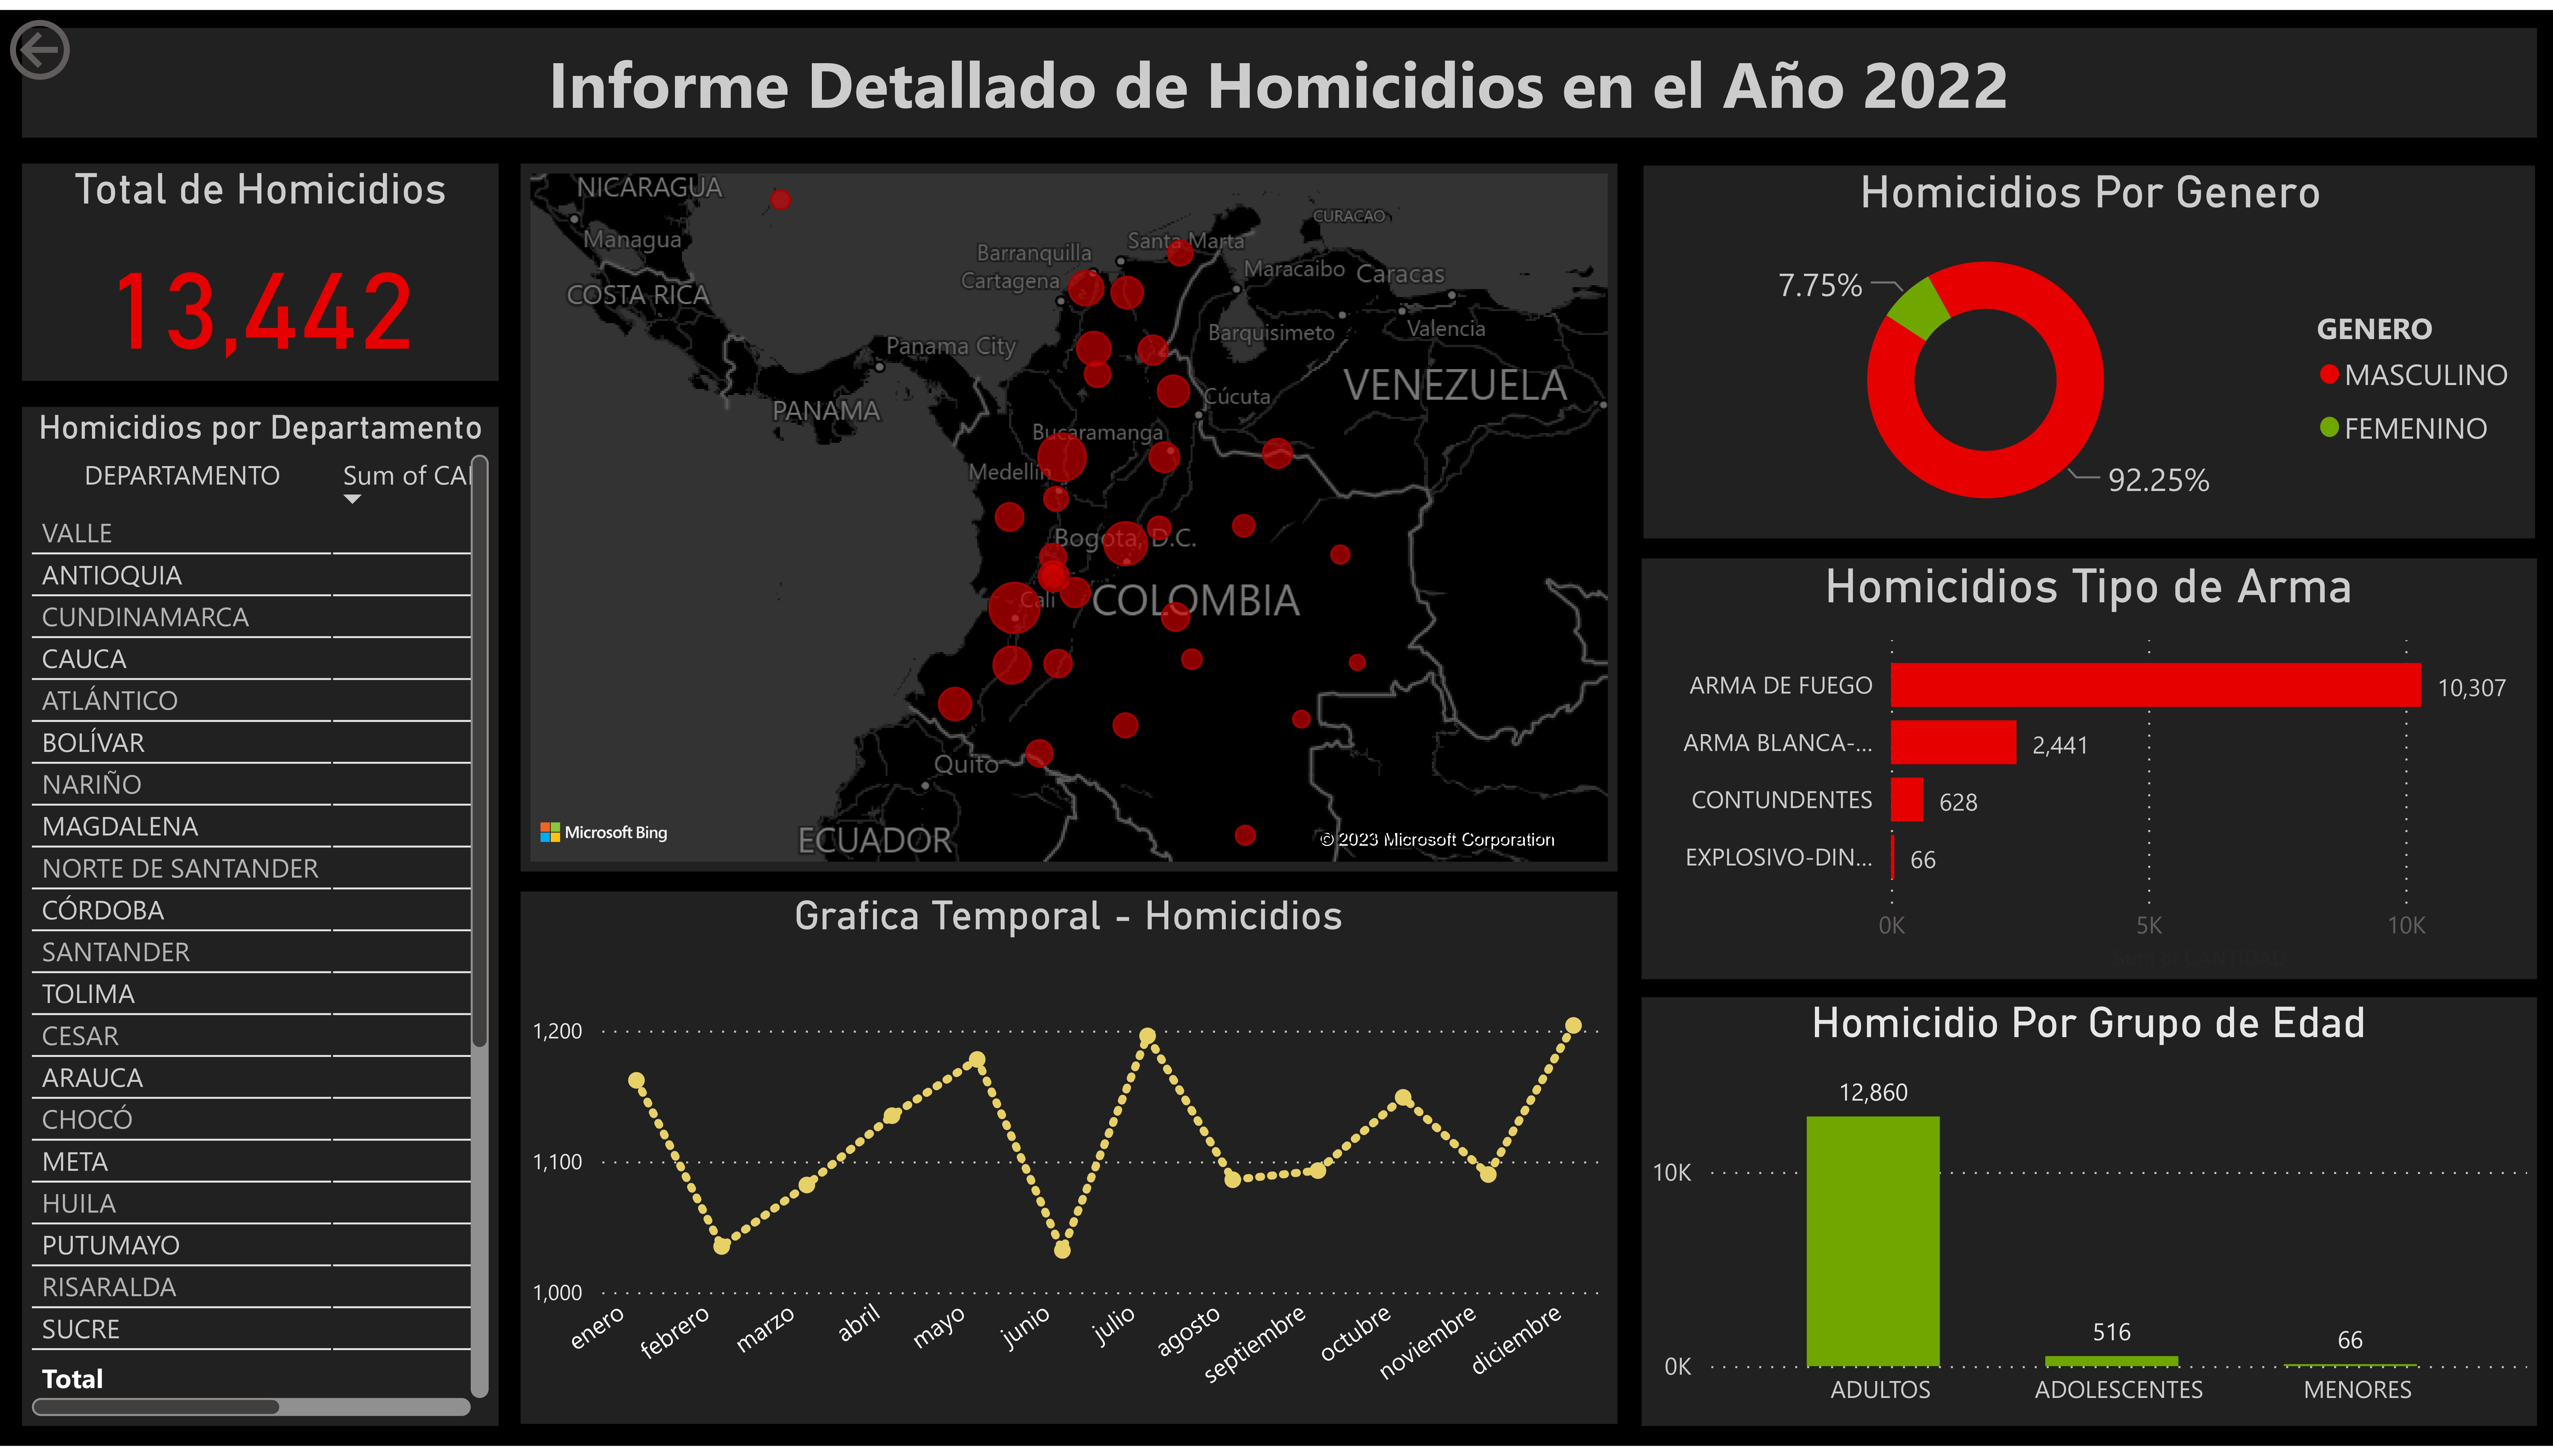 Total de Homicidios

Homicidios por Departamento
DEPARTAMENTO NEA.

VALLE
ANTIOQUIA
CUNDINAMARCA
o.\V[@
ATLANTICO
BOLIVAR
X:INe)
MAGDALENA
NORTE DE SANTANDER
CORDOBA
Narn]
TOLIMA
CESAR
IV
CHOCO
iar
HUILA
PUTUMAYO
NVI)
SUCRE

1) ]
CGE 00

Informe Detallado de Homicidios en el Aho 2022

NICARAGUA

COSTA RICA

VENEZUELA

PANAMA

COLOMBIA

ERECT E:T)

ECUADOR

©2023 Microsoft Corporation

Grafica Temporal - Homicidios

0)
° 0)
oR $ ° IY
] o® % 0 hs )
° LJ ry 0 ° Q )
° = ry J ° LS 0)
rs od ES 0 % a *o J
° o® [} 4 % P) ( S
RE a? N J HR
00) EY po d LY $ (GURTTY 4 Rk
PS
KY oo EY S
LN °0
o O
£0100 HE N EE
ONC SI CSE NC RRS Ss SI SA SR
2) 1) 4 C \ W Yo ® FS
Q ®
2 \

Homicidios Por Genero

7.75% p |

GENERO
MASCULINO

® FEMENINO
— 92.25%

Homicidios Tipo de Arma

ARMA DE FUEGO 10,307
ARMA BLANCA-... 2,441
CONTUNDENTES [pds]

EXPLOSIVO-DIN... = 66

Homicidio Por Grupo de Edad

12,860

 

ADULTOS

ADOLESCENTES WISN]